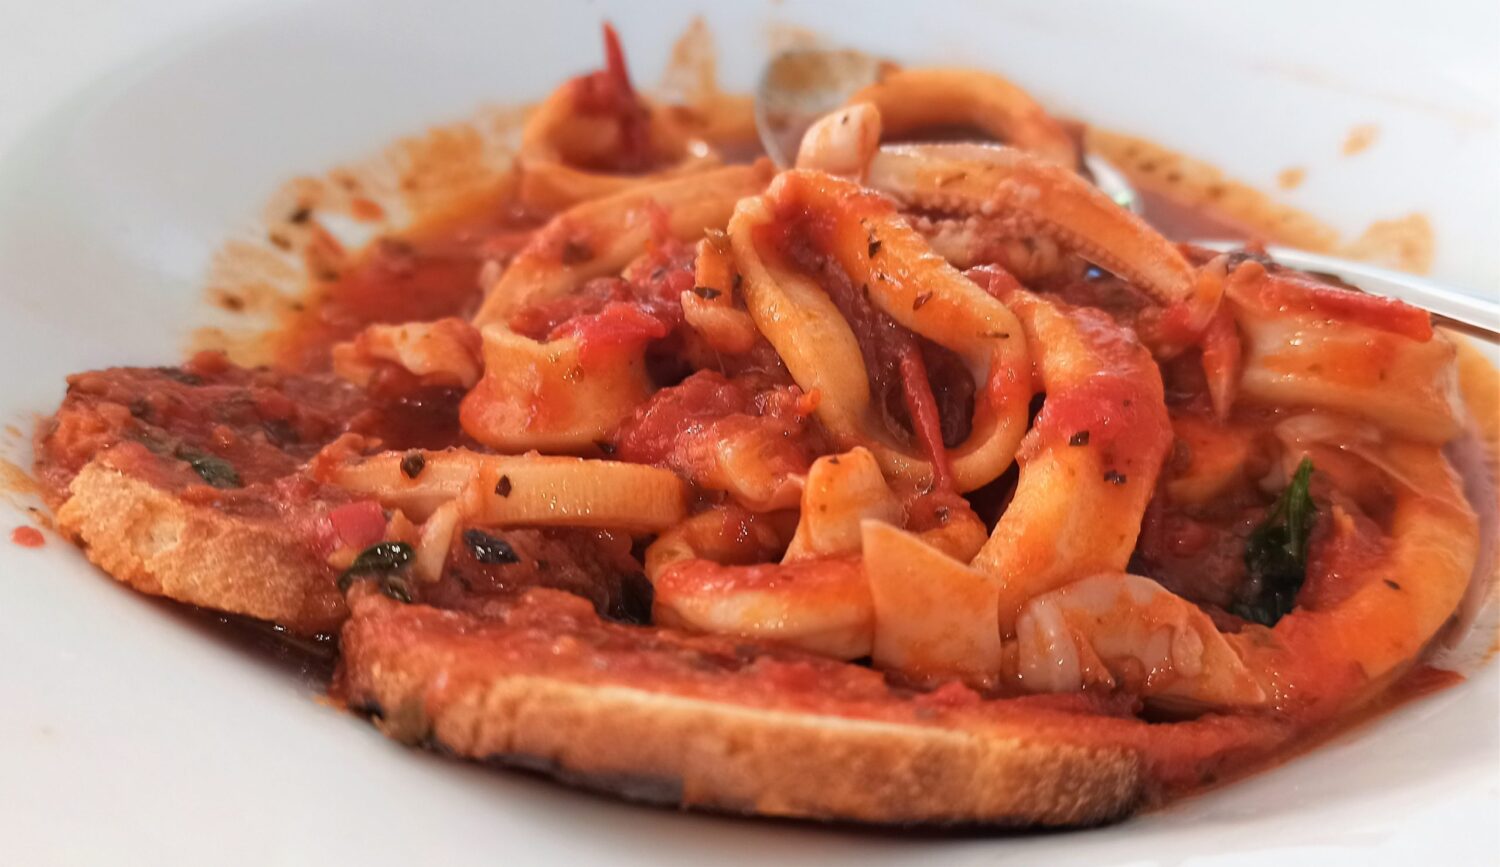 calamari-alla-pizzaiola,-il-secondo-estivo-velocissimo-e-goloso.-piu-saporiti-dei-fritti-con-i-segreti-della-tradizione-napoletana